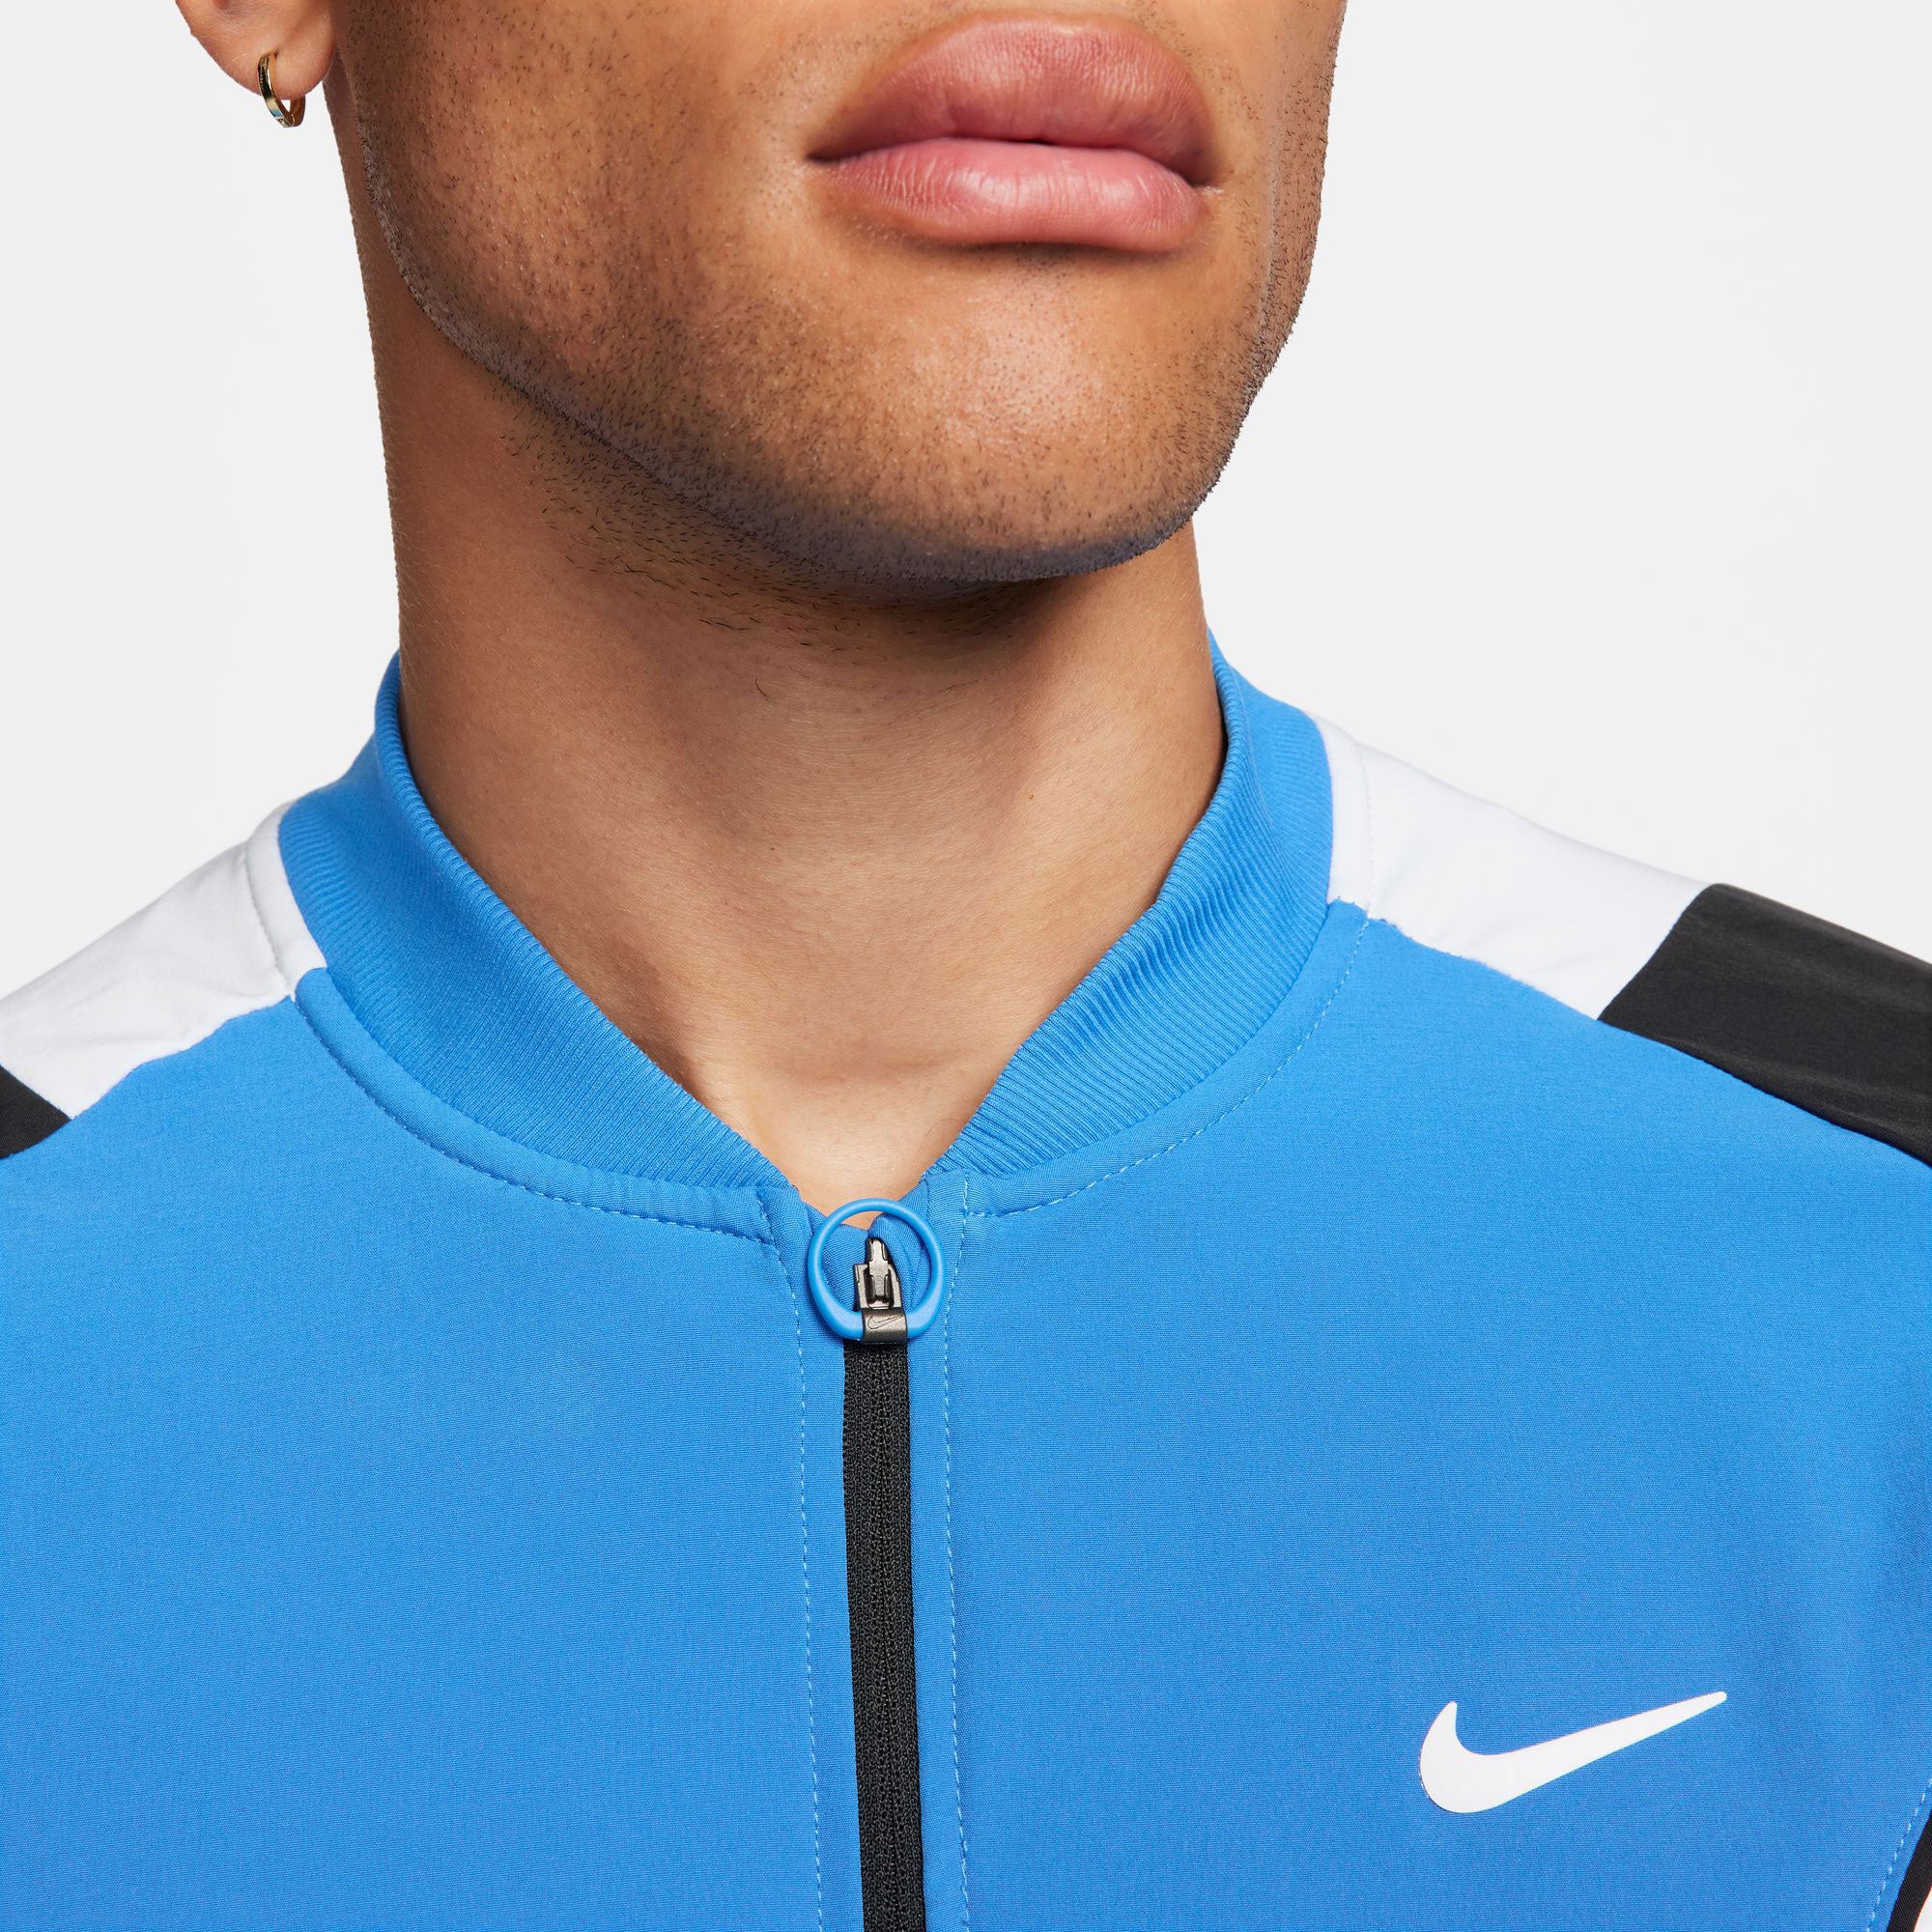 NikeCourt Advantage Men's Dri-FIT Tennis Jacket - Blue (4)